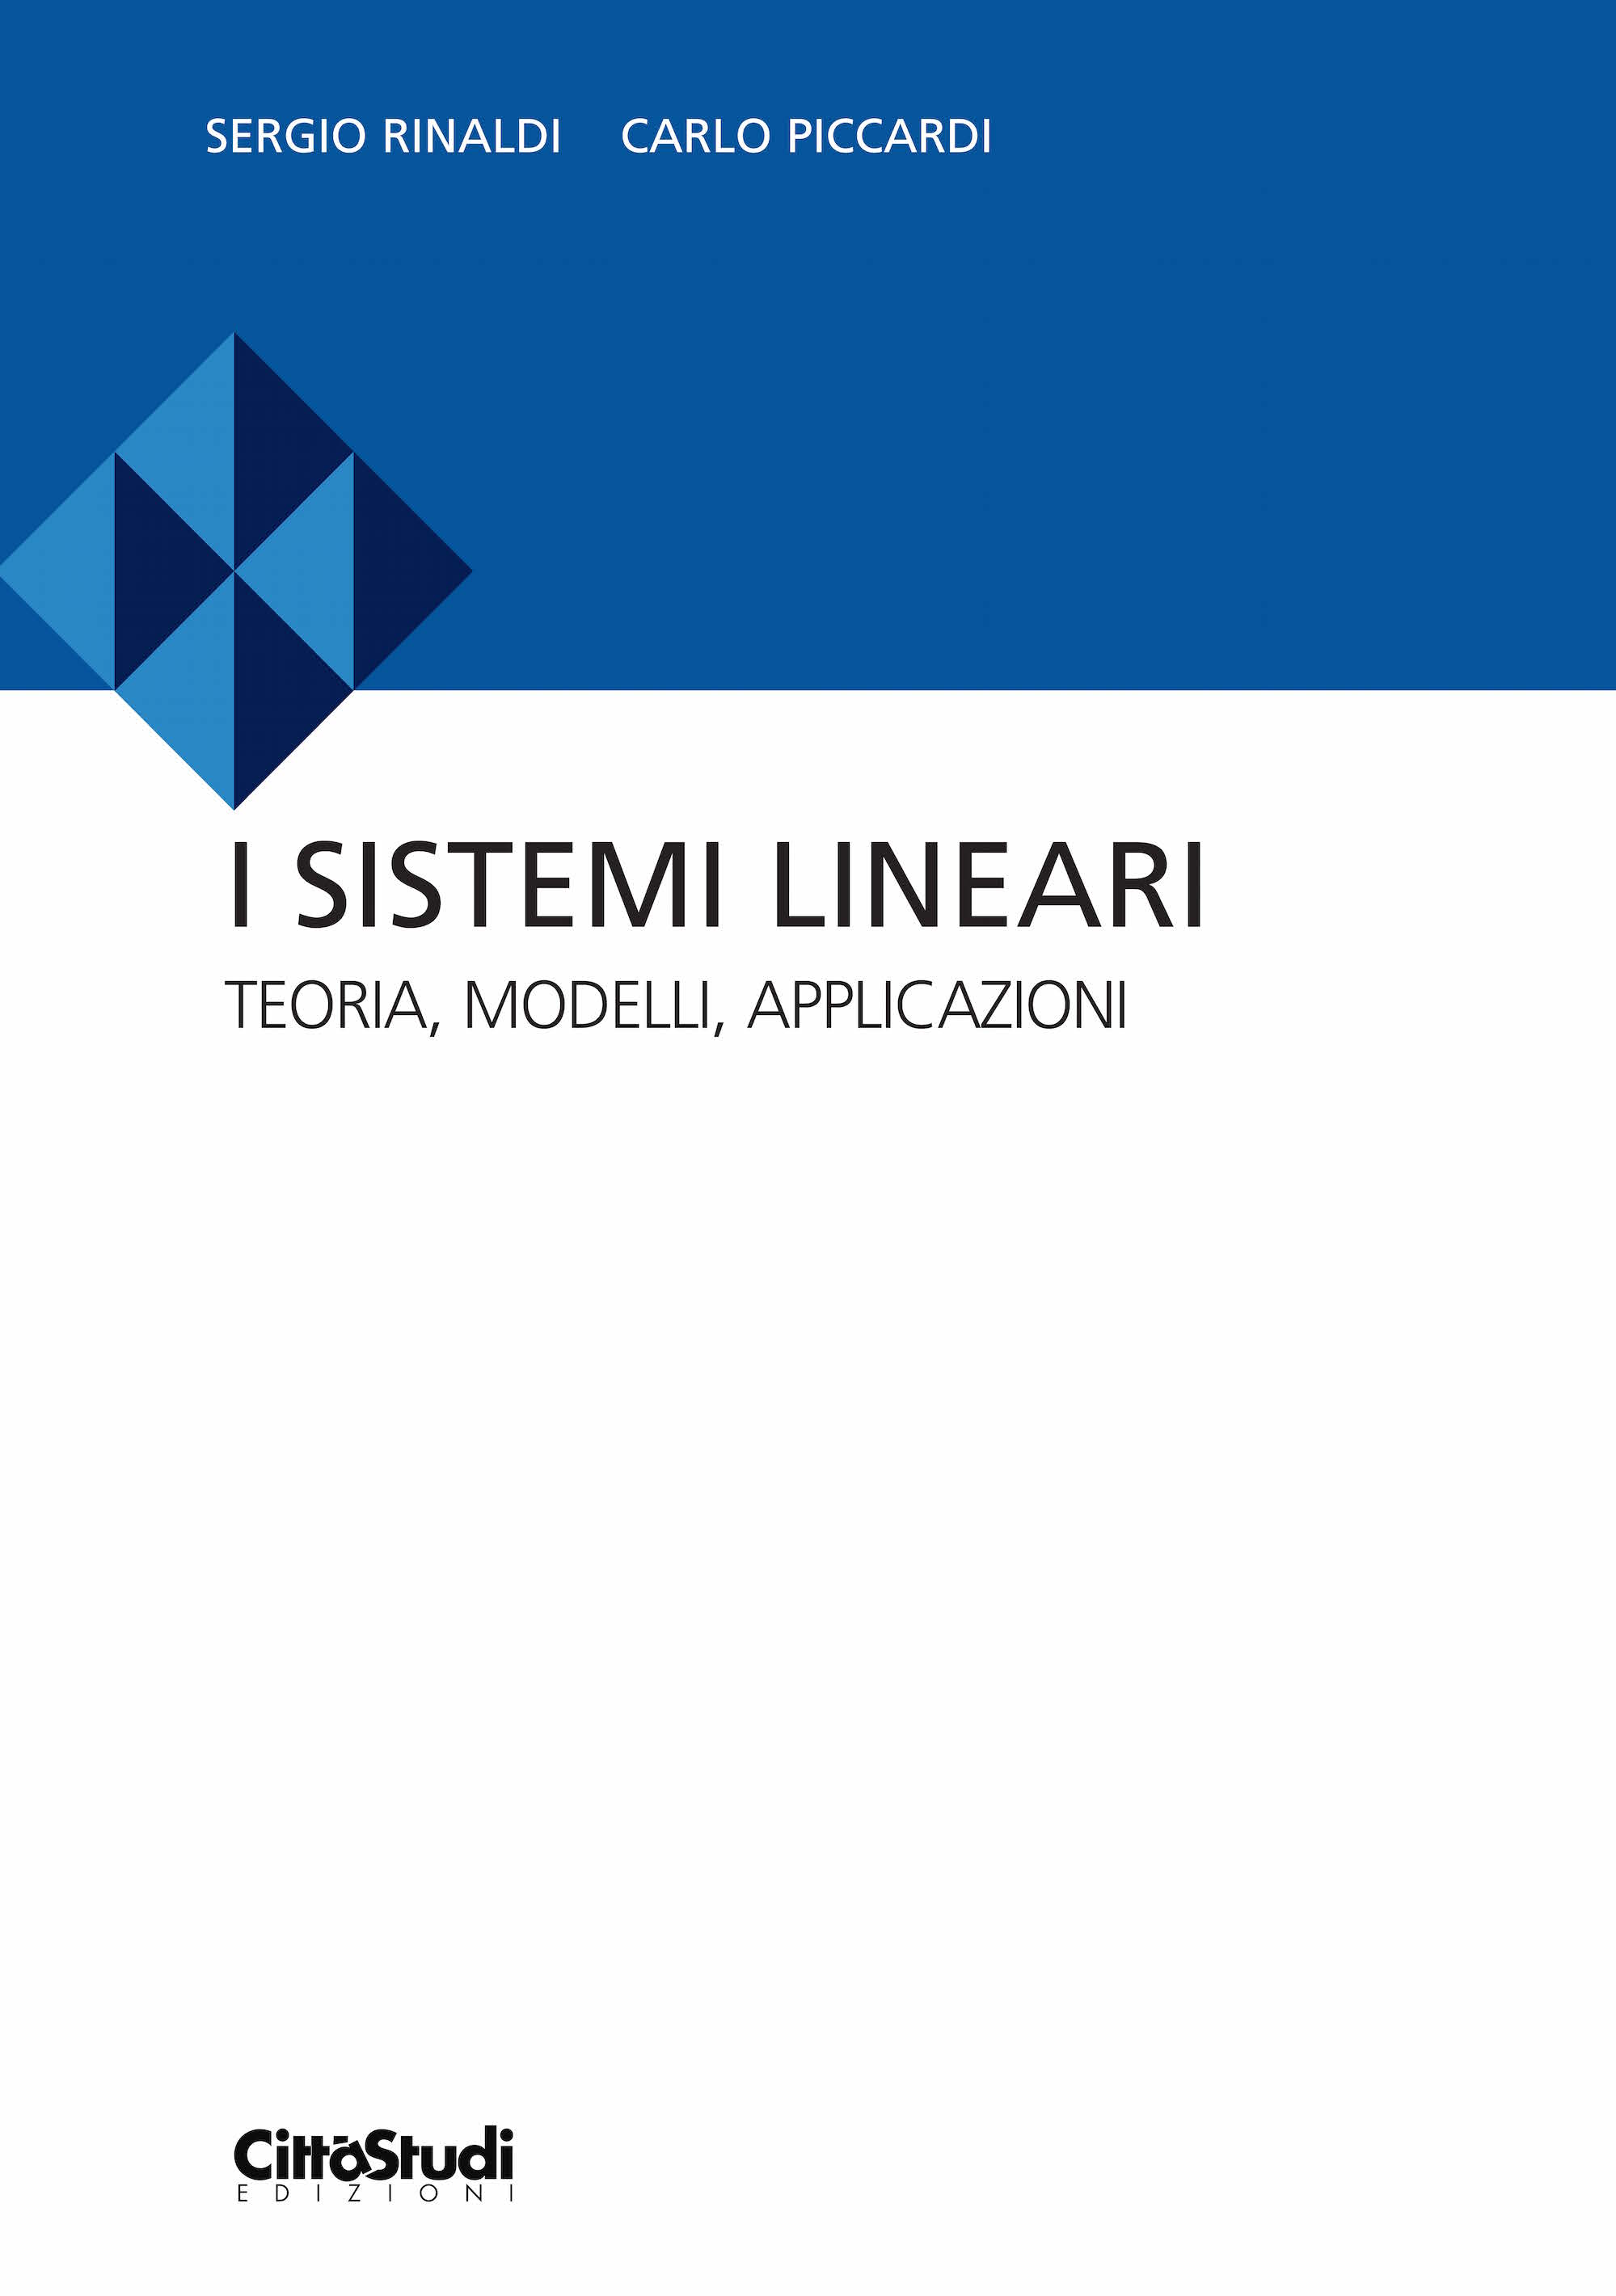 I sistemi lineari: Teoria, modelli, applicazioni